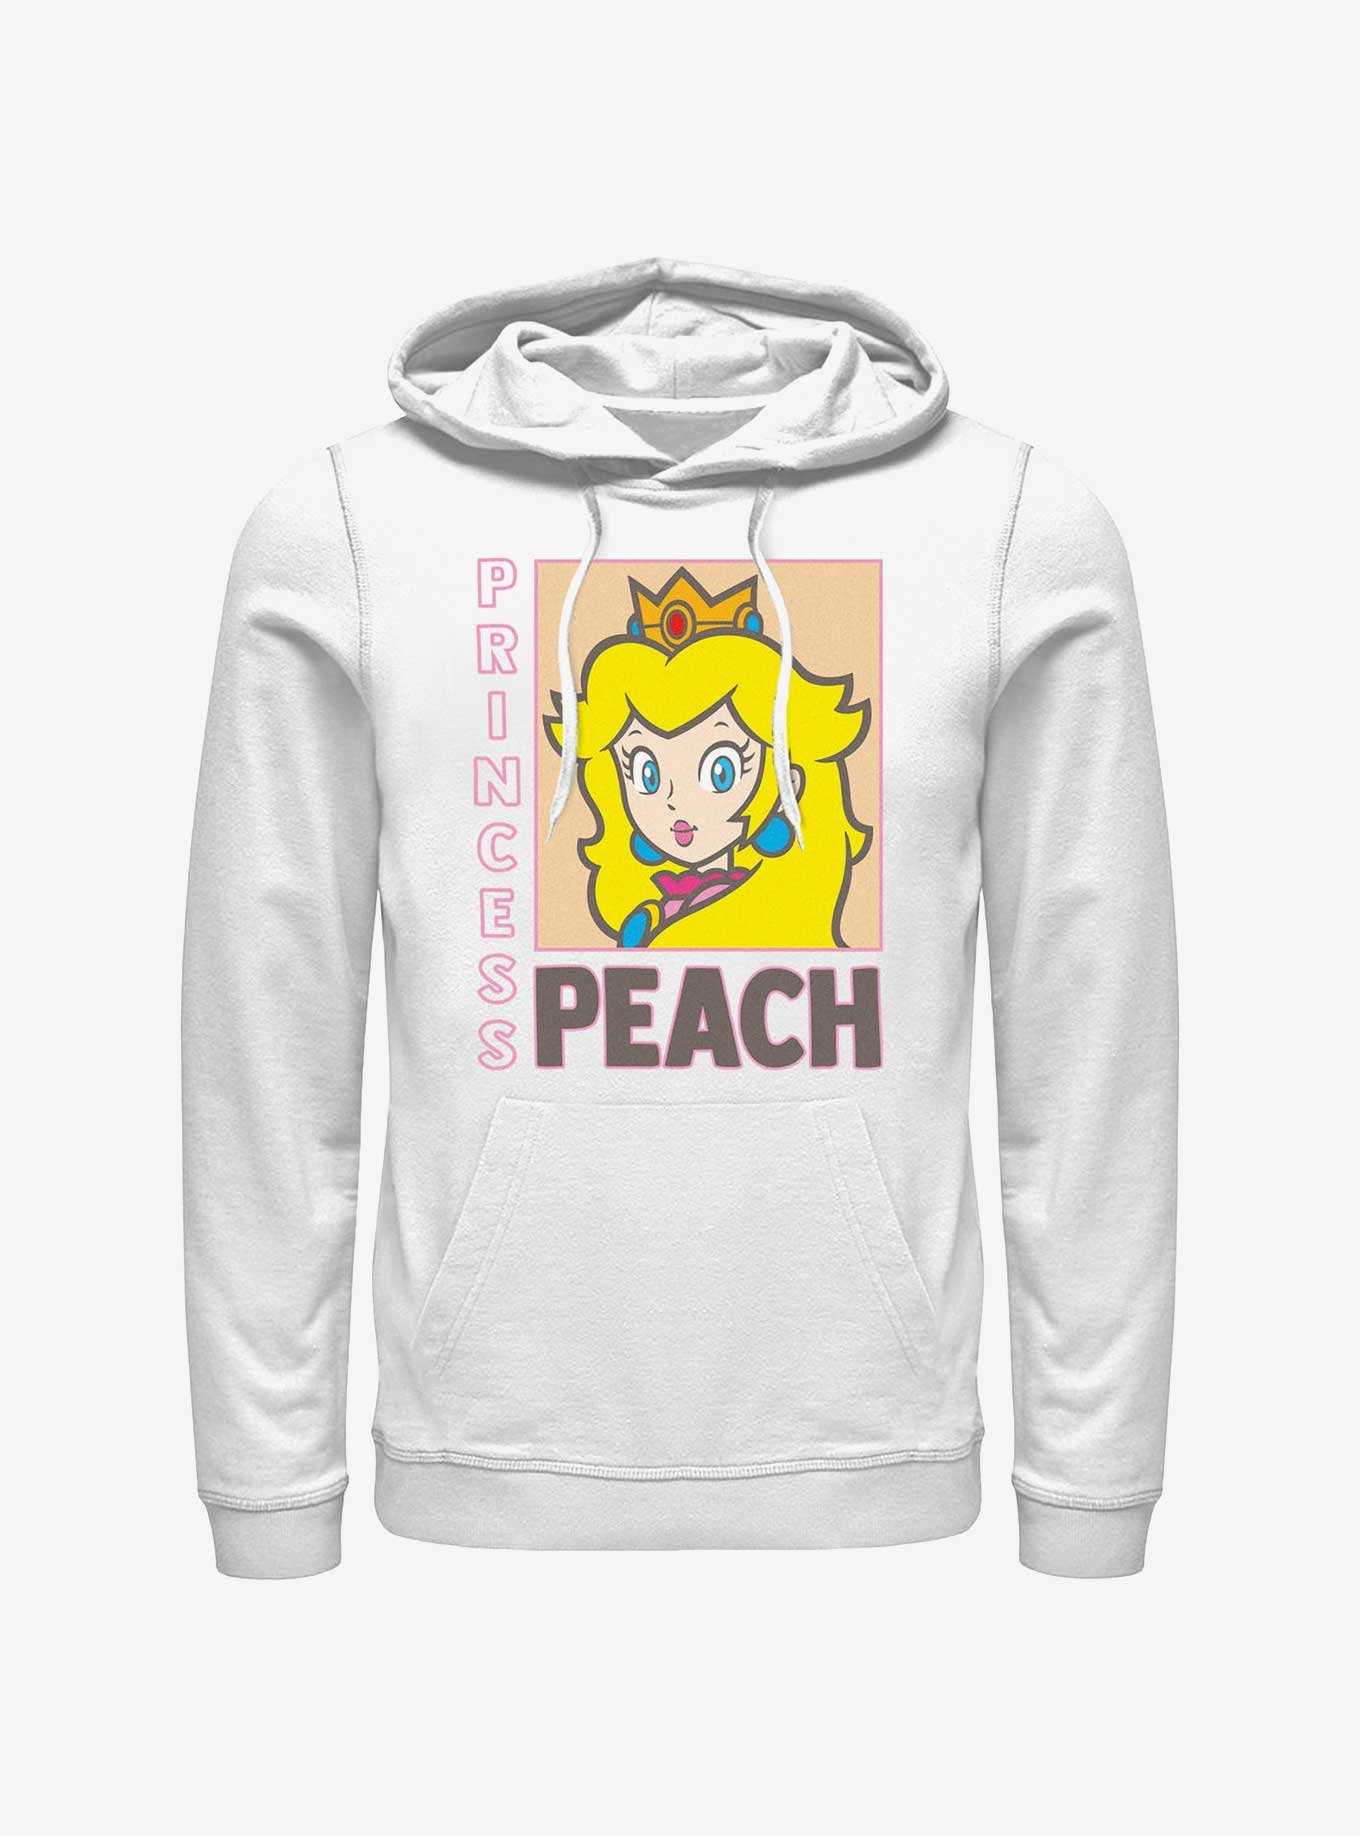 Mario Princess Peach Mineral Wash T-Shirt  Mario and princess peach, Princess  peach, Sweaters and jeans